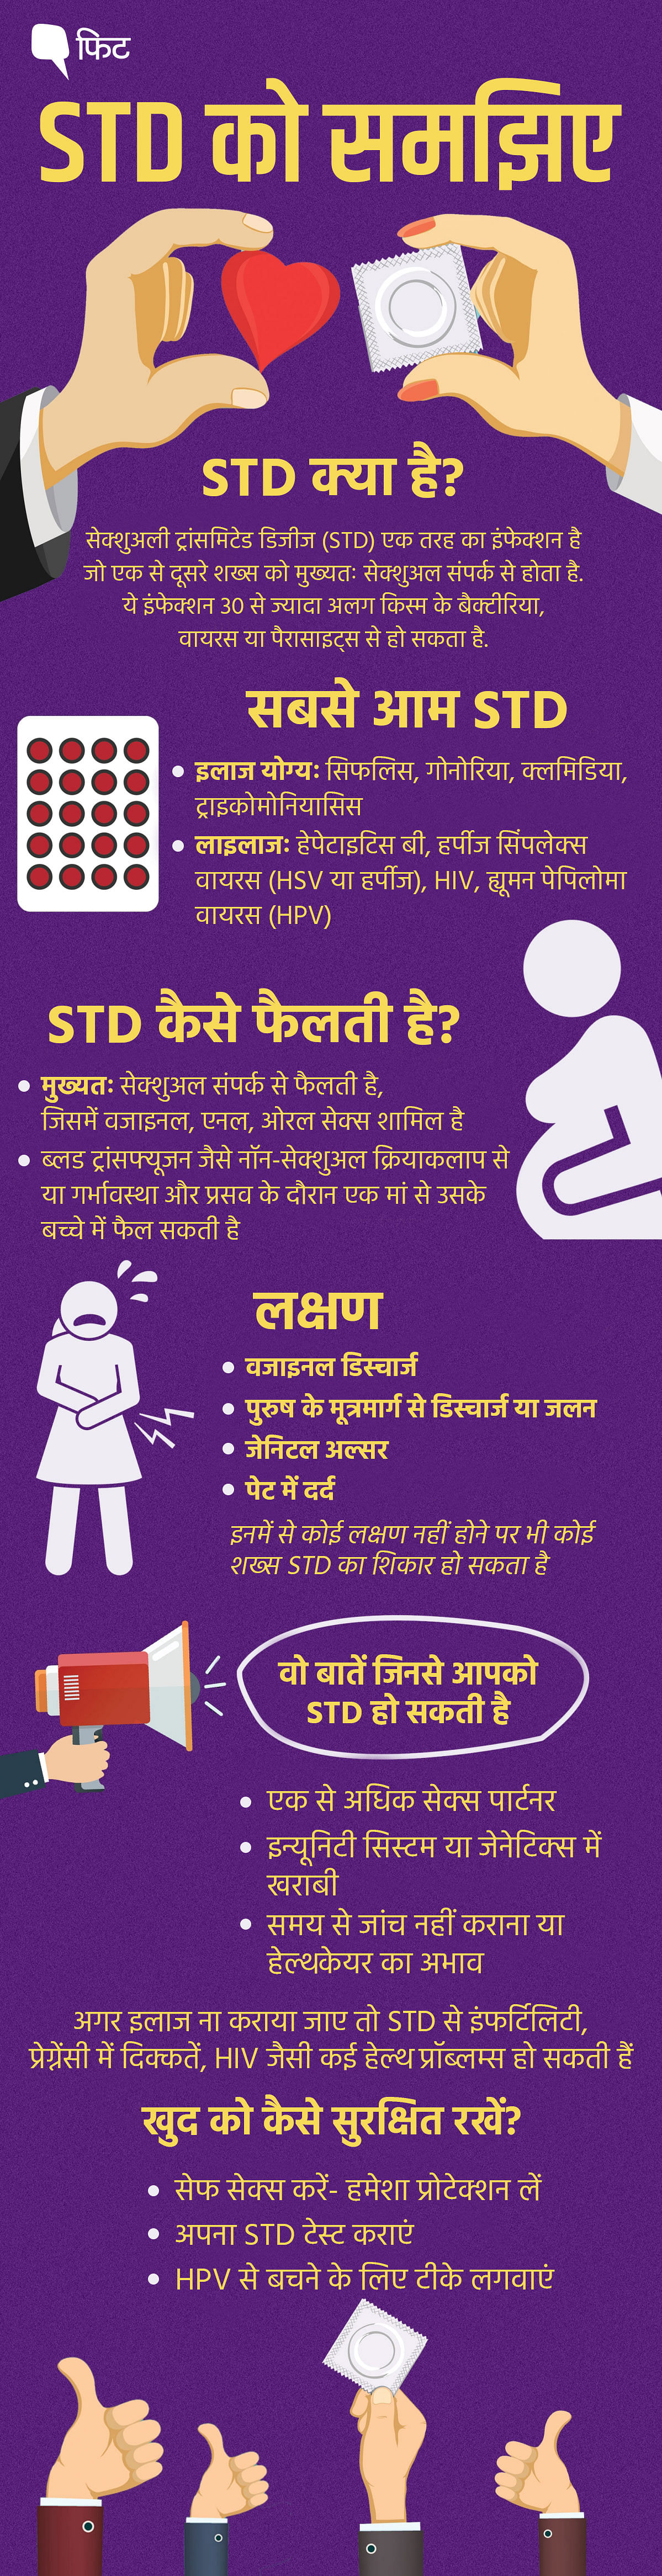 STD ज्यादातर सेक्शुअल संबंध से फैलती हैं, जिसमें ओरल, वजाइनल या एनल सेक्स शामिल है. 